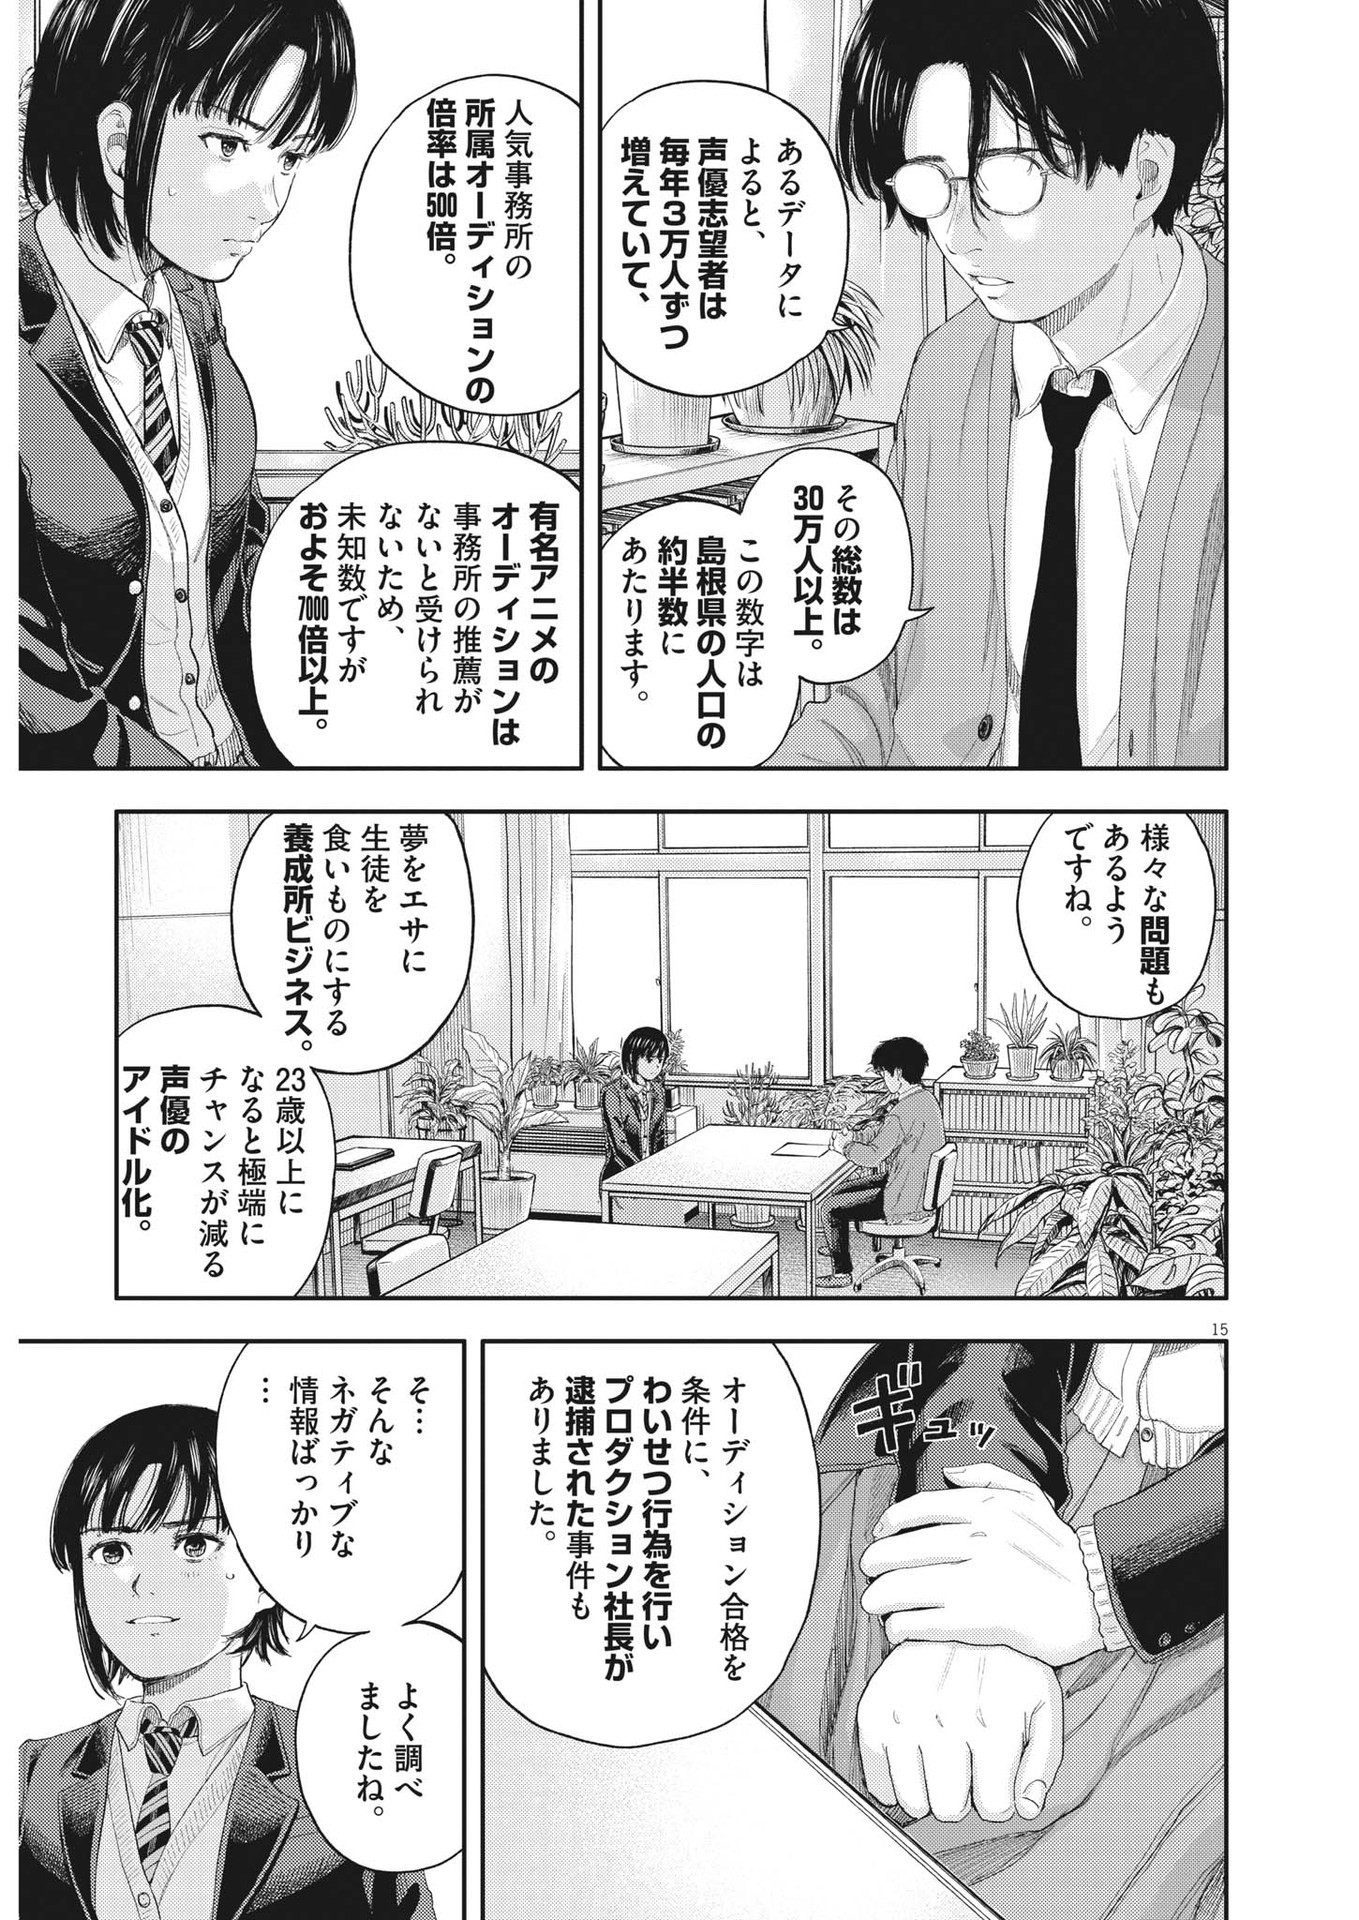 Yumenashi-sensei no Shinroshidou - Chapter 1 - Page 15